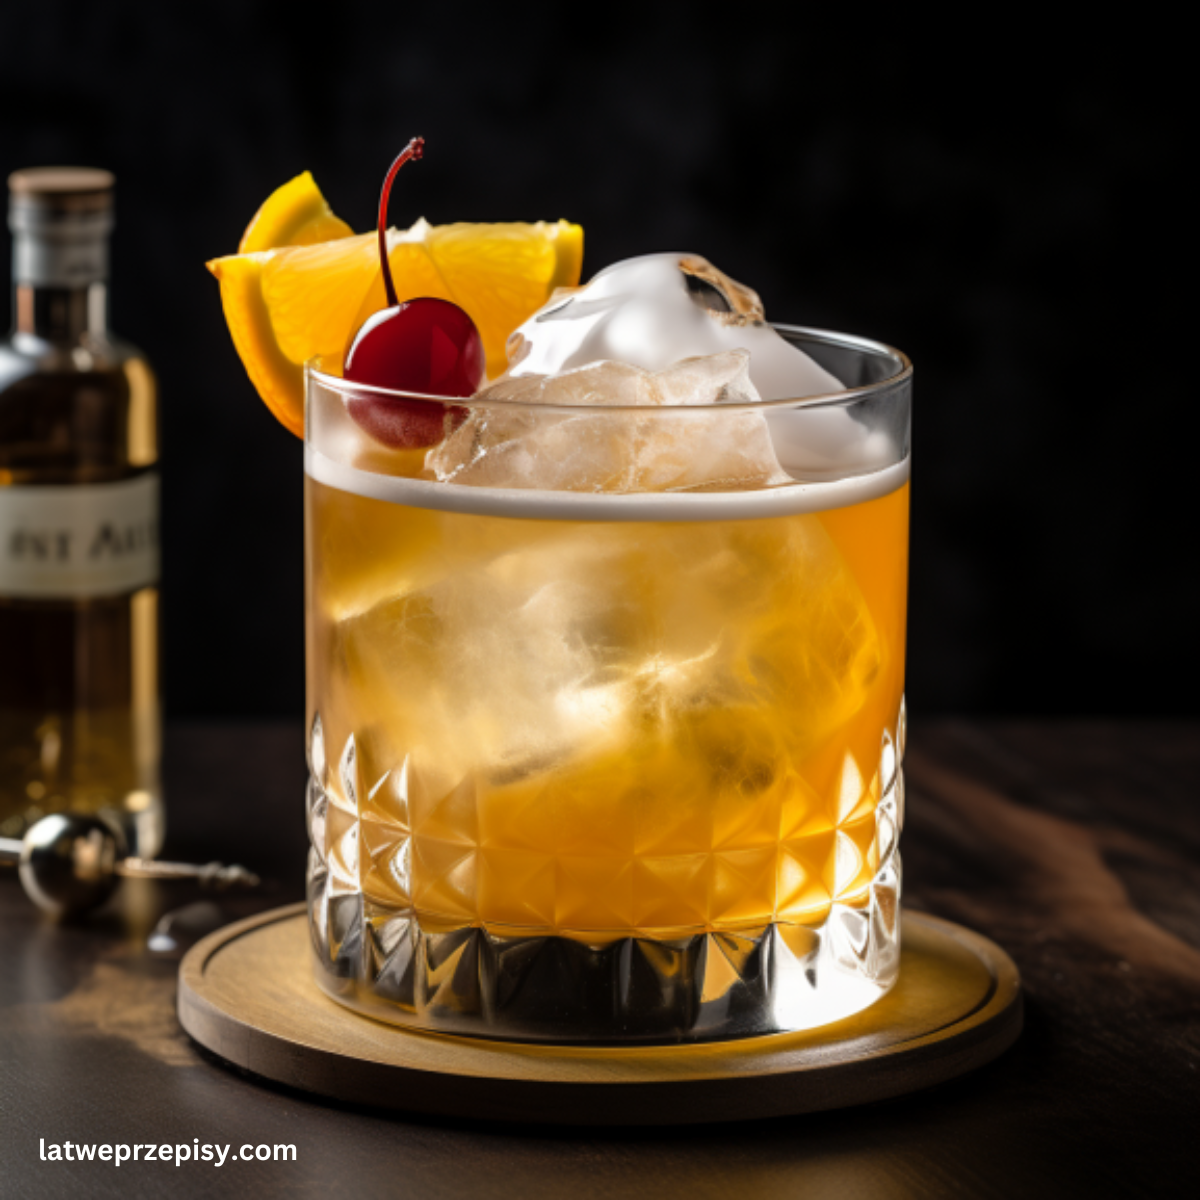 Amaretto sour, podane w szklance od whiskey, z plasterkiem pomarańczy i wisienką maraschino.